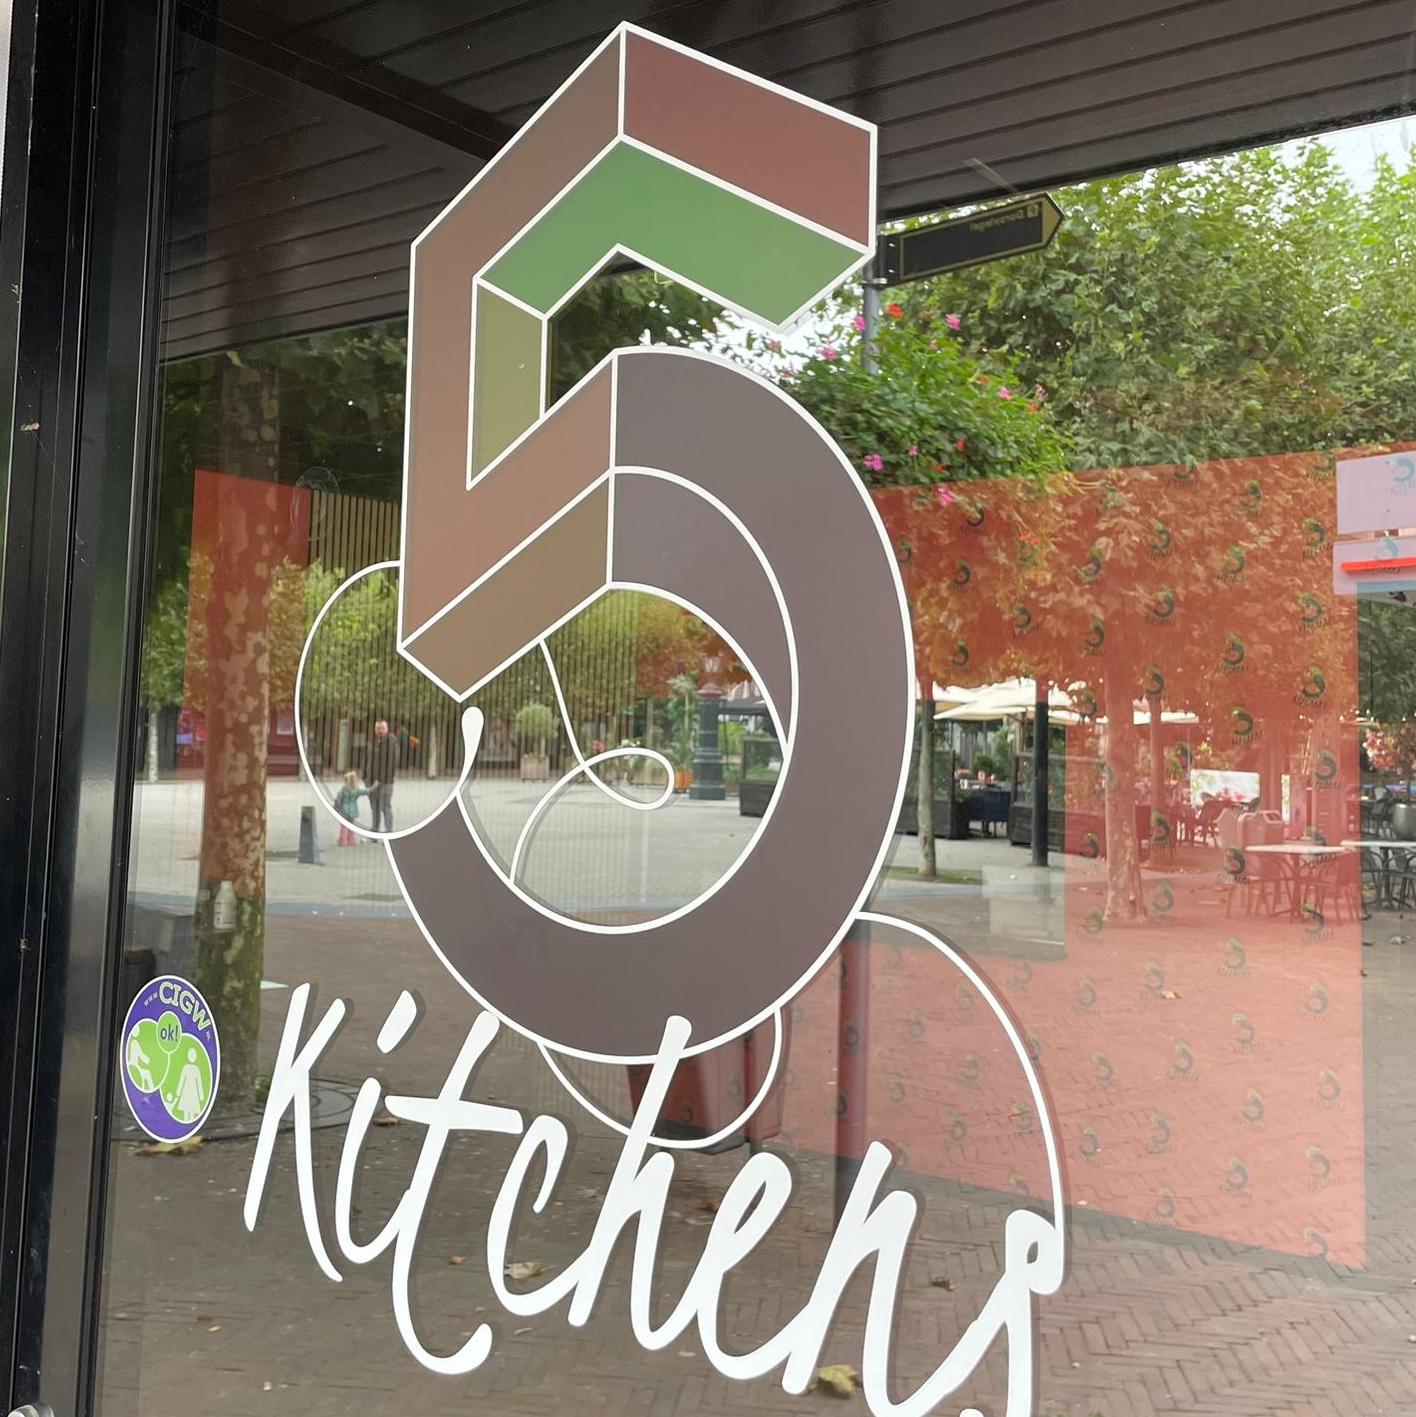 5kitchens - restaurant opening - Wijchen=